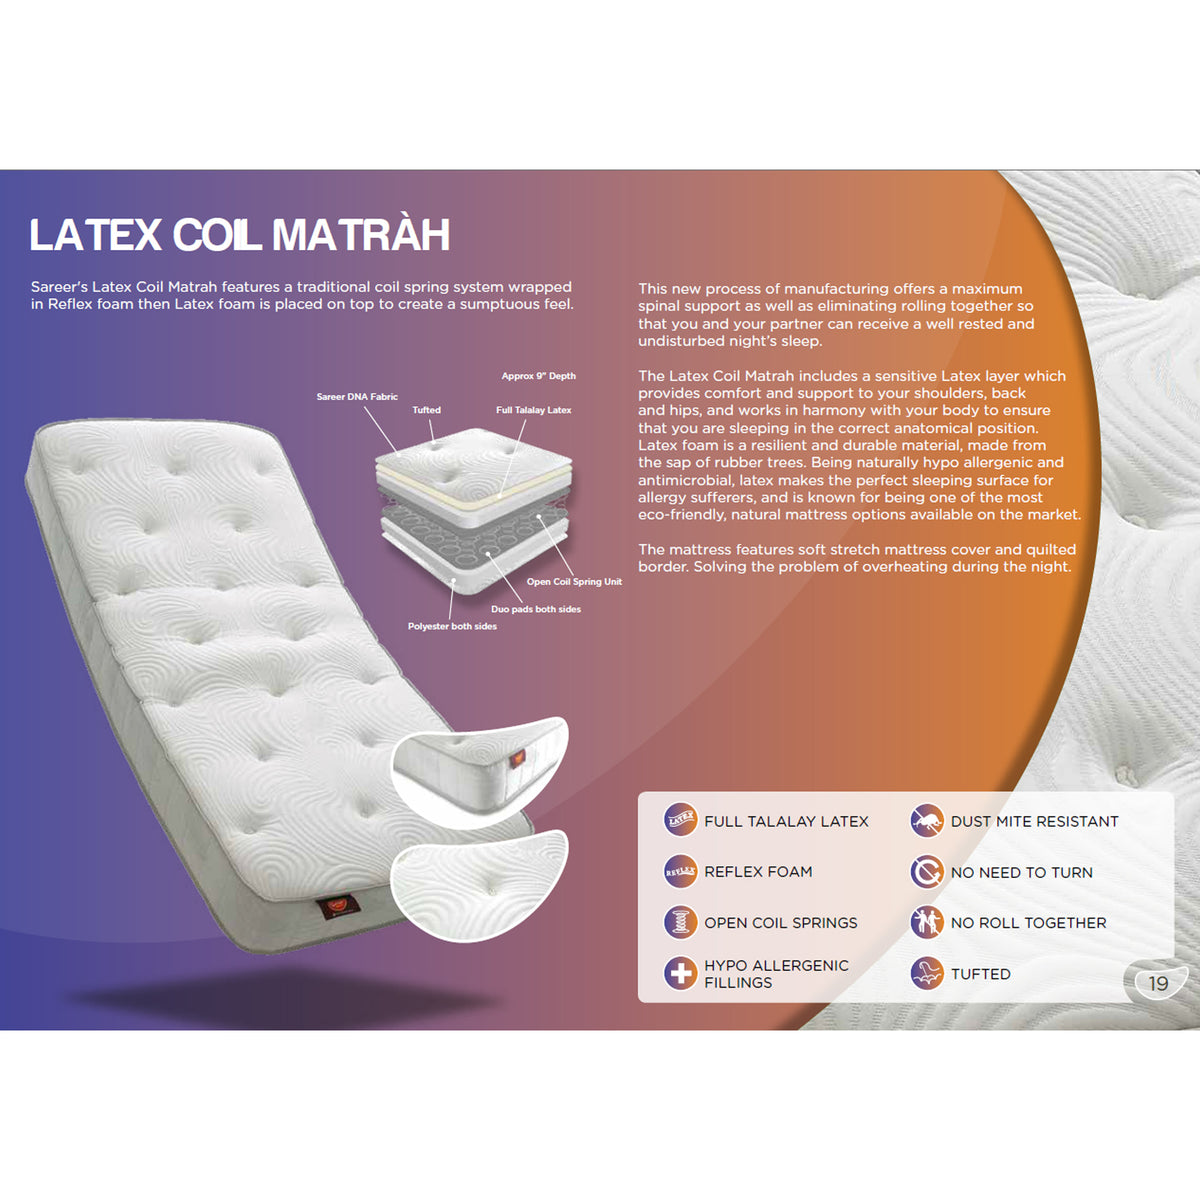 Matrah Latex Sprung Mattress